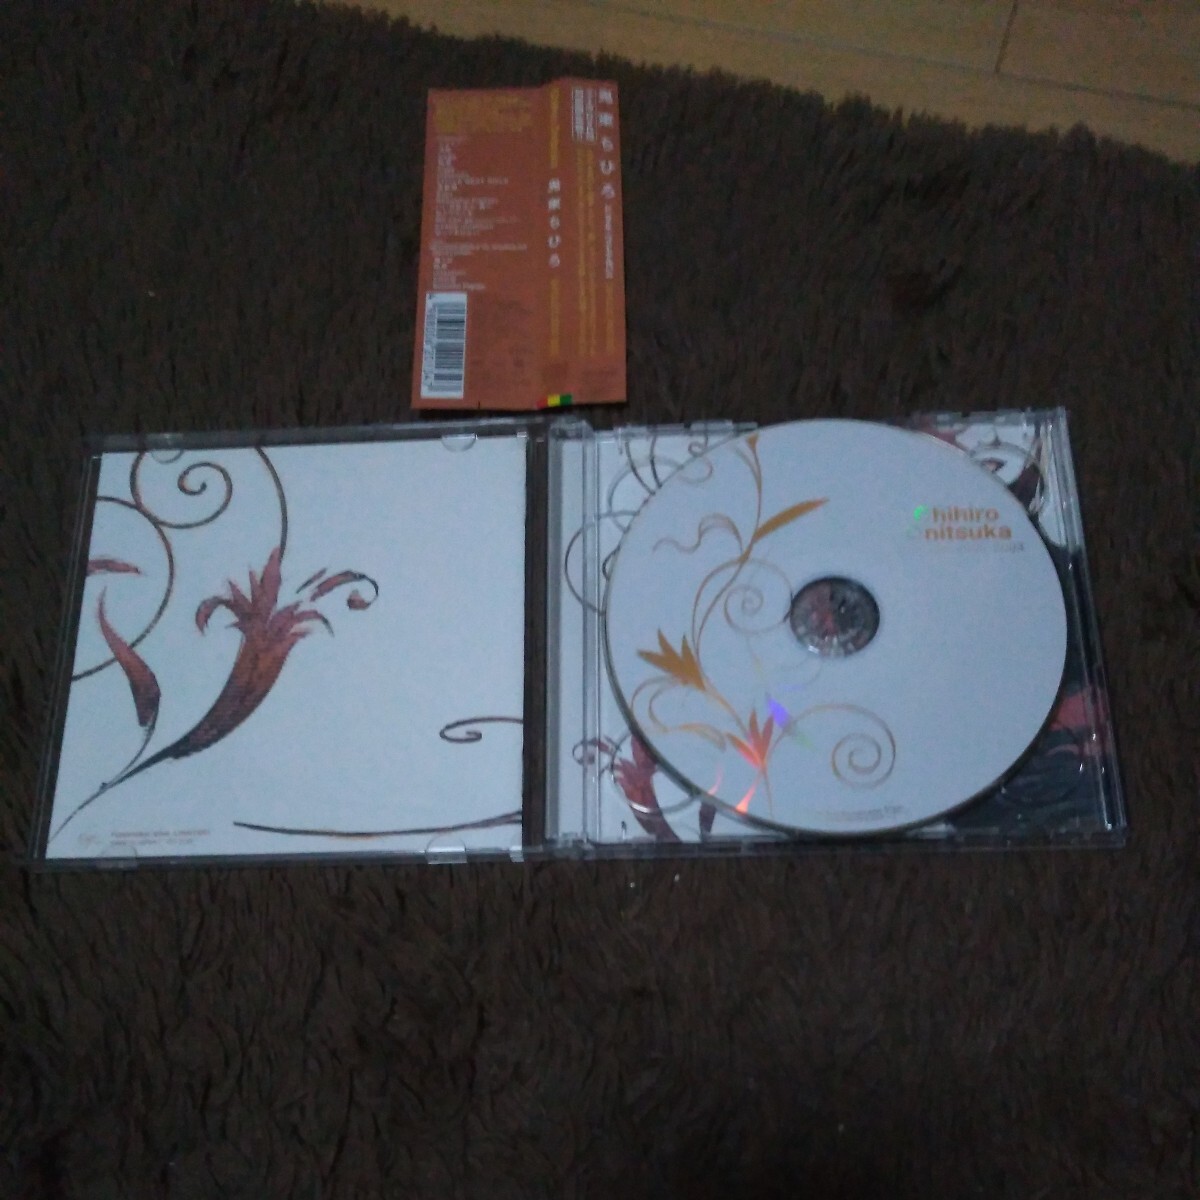 初回限定盤 CD+DVD 鬼束ちひろ「SINGLES 2000-2003」ベスト/月光/眩暈/infection/いい日旅立ち・西へ/私とワルツを/守ってあげたい_画像3